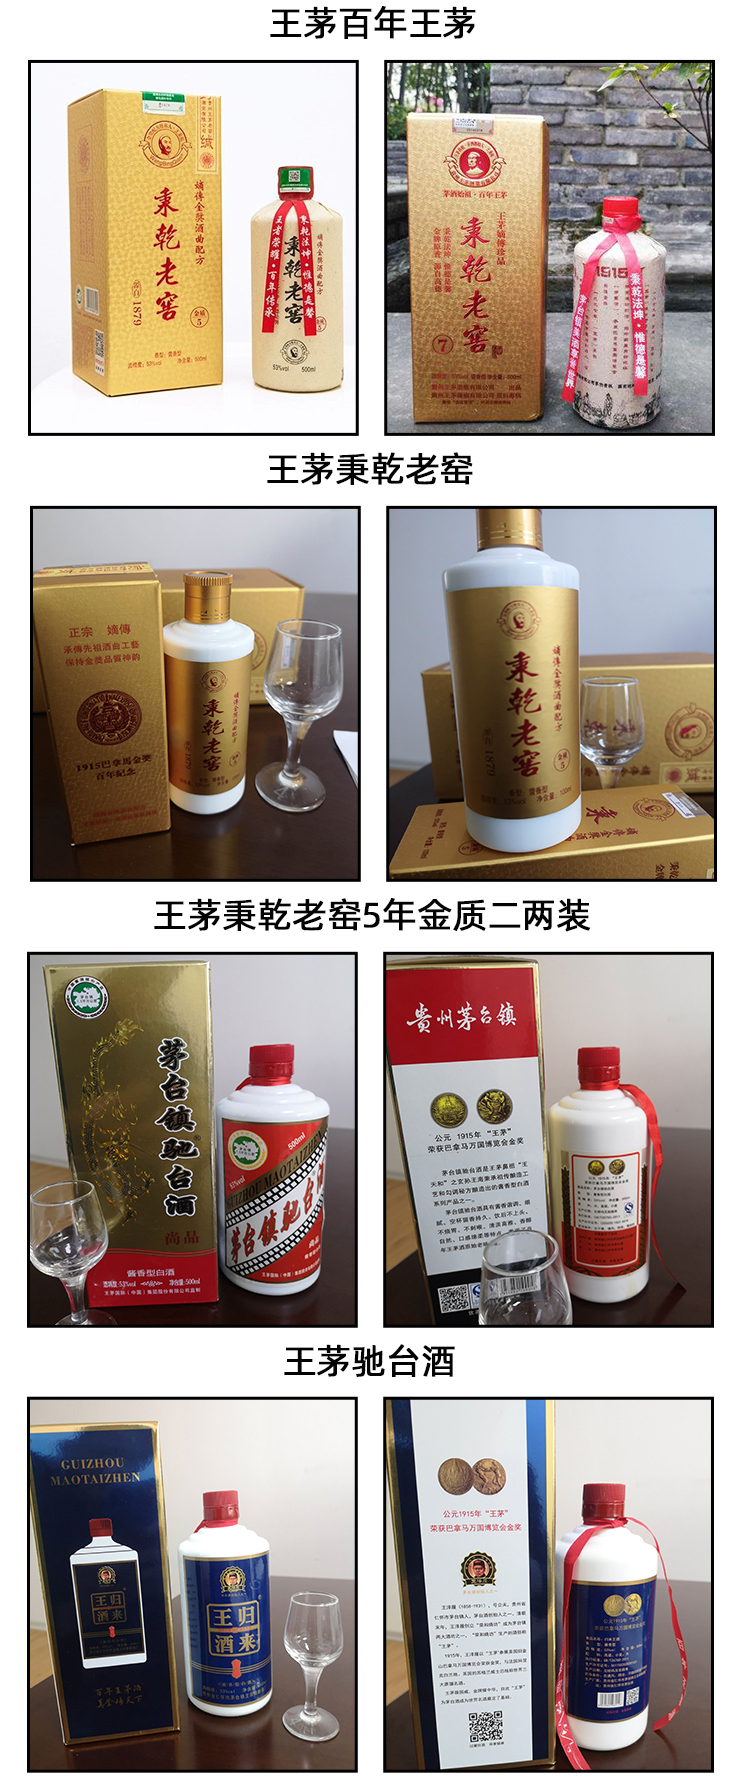 0618北海王茅酒业有限公司_03.jpg